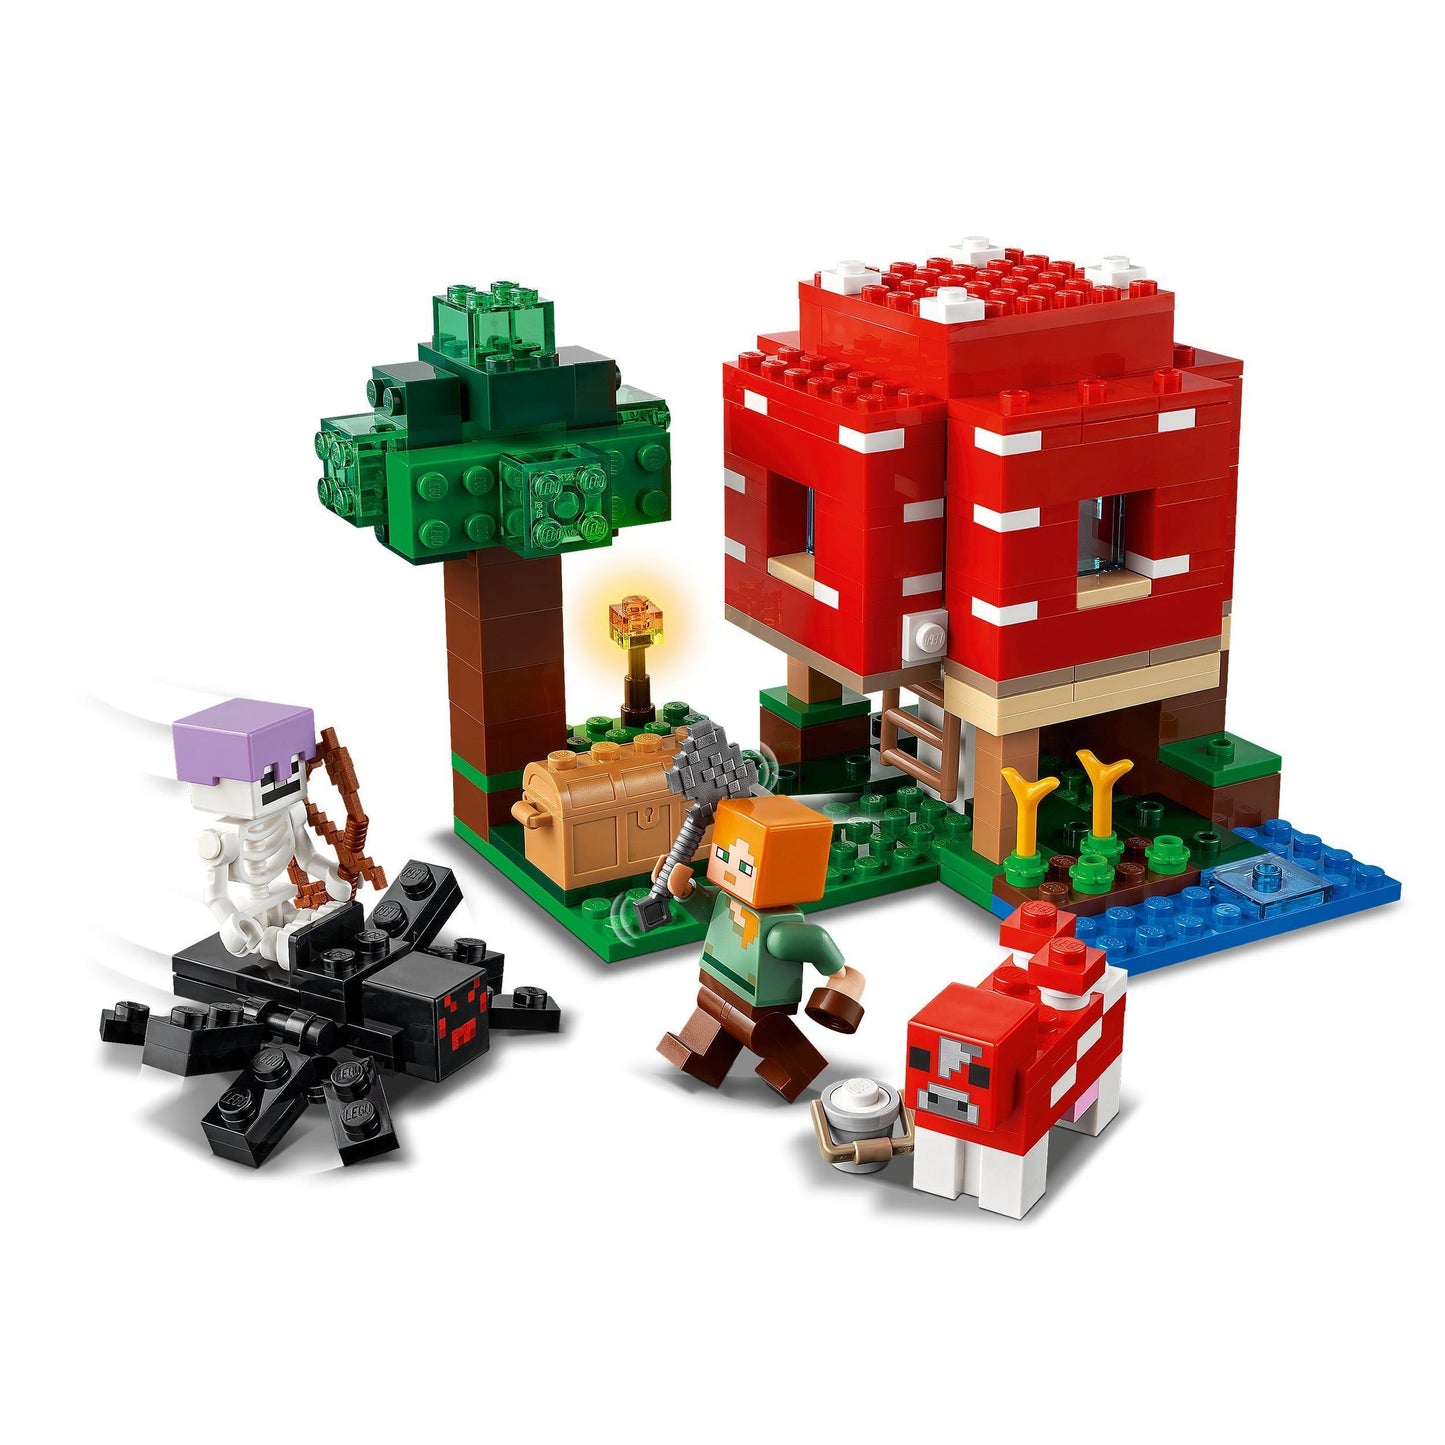 LEGO Het Paddenstoelenhuis 21179 Minecraft | 2TTOYS ✓ Official shop<br>